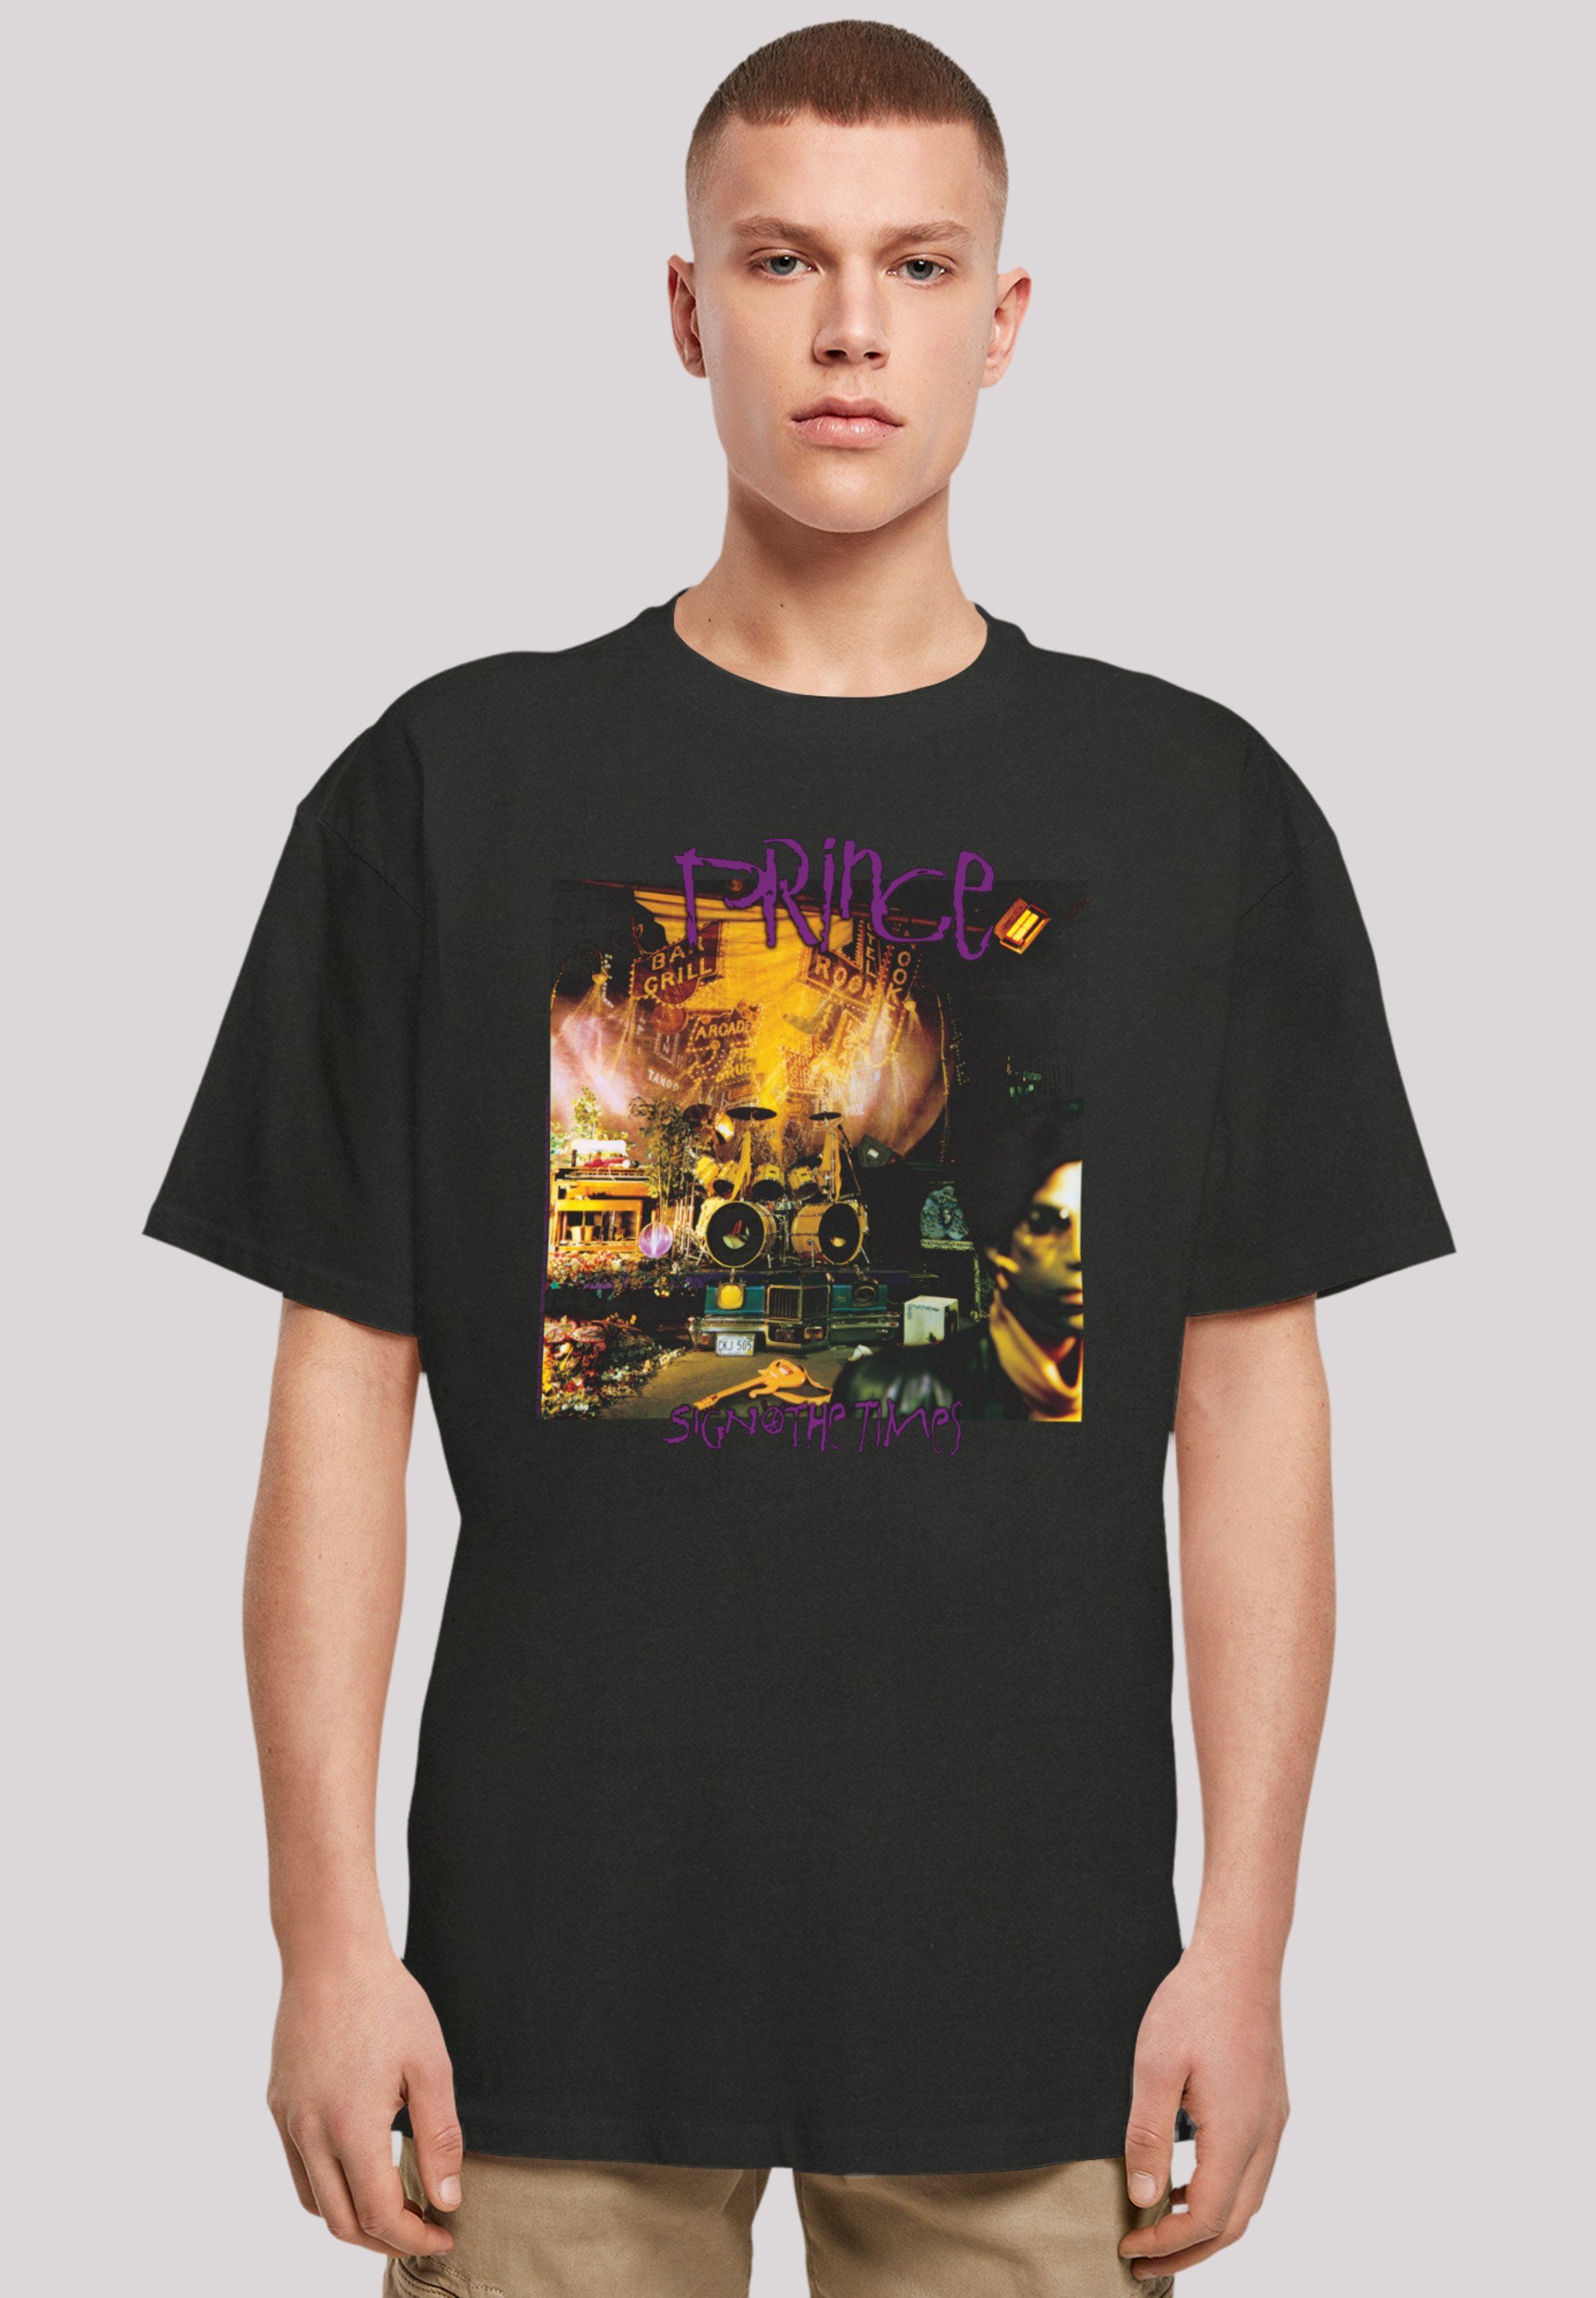 F4NT4STIC T-Shirt überschnittene Band, Passform The Qualität, und Premium Rock-Musik, Schultern Musik Weite Sign Prince Times O